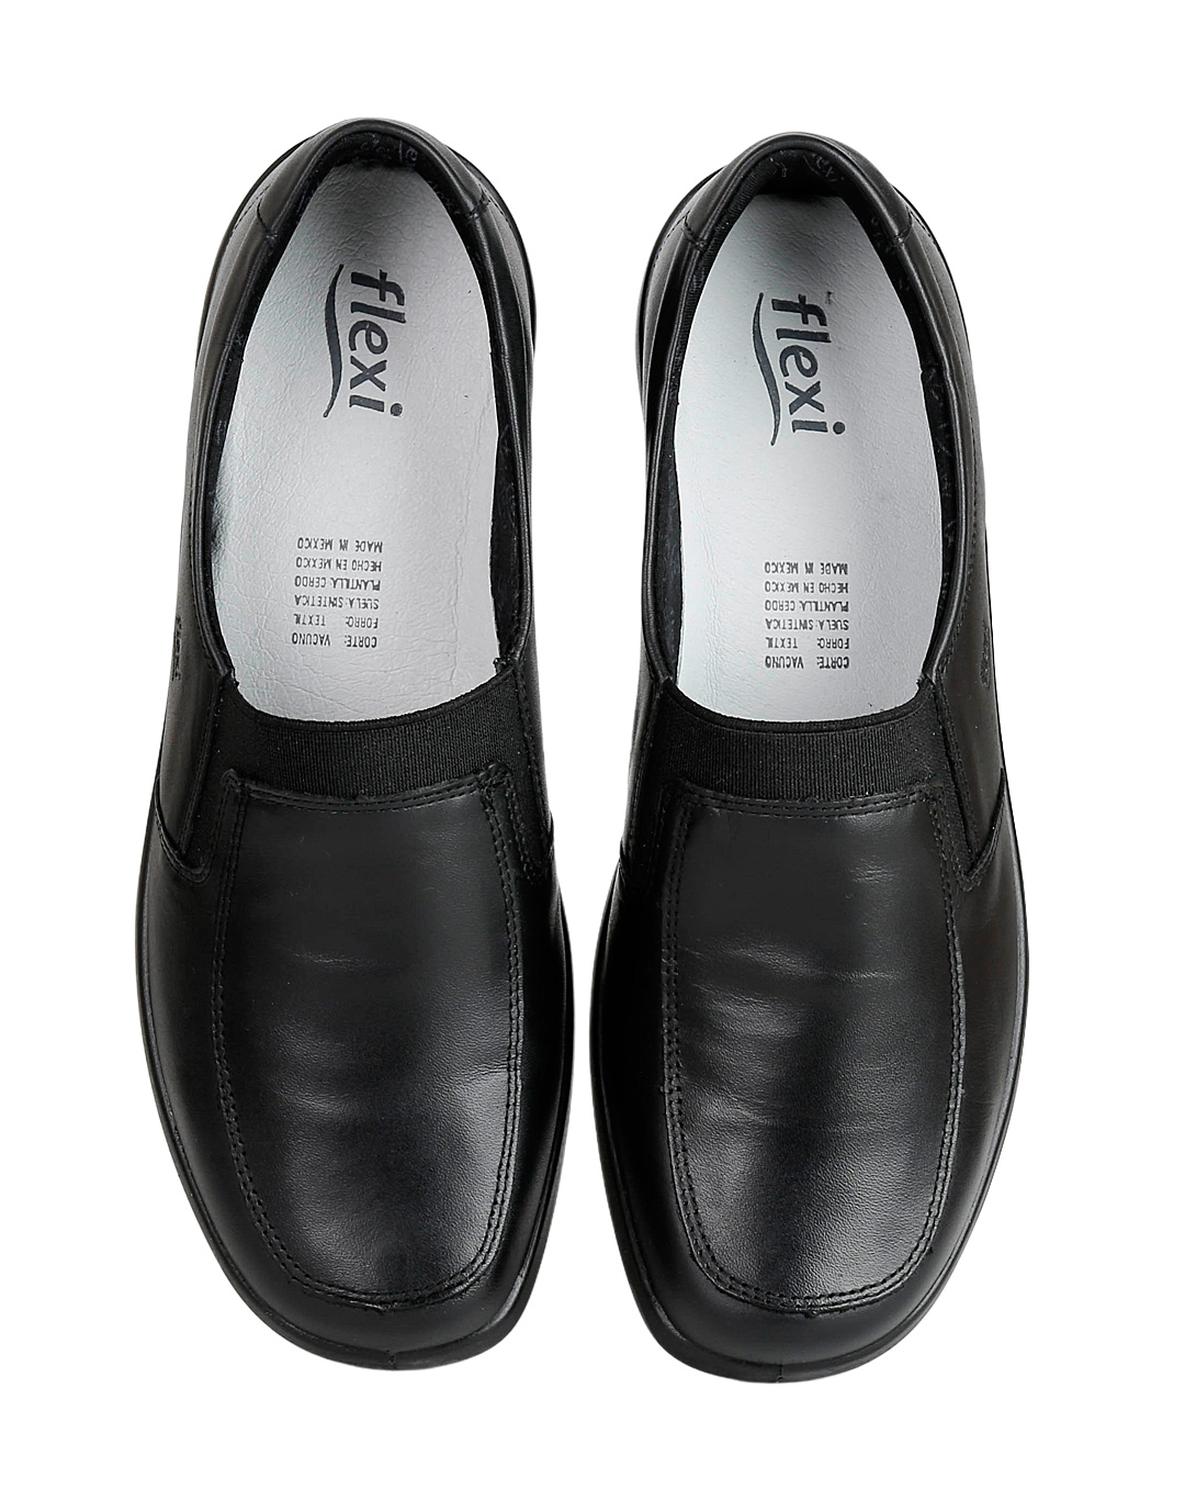 Zapato Confort Mujer Flexi Negro 02500512 Piel